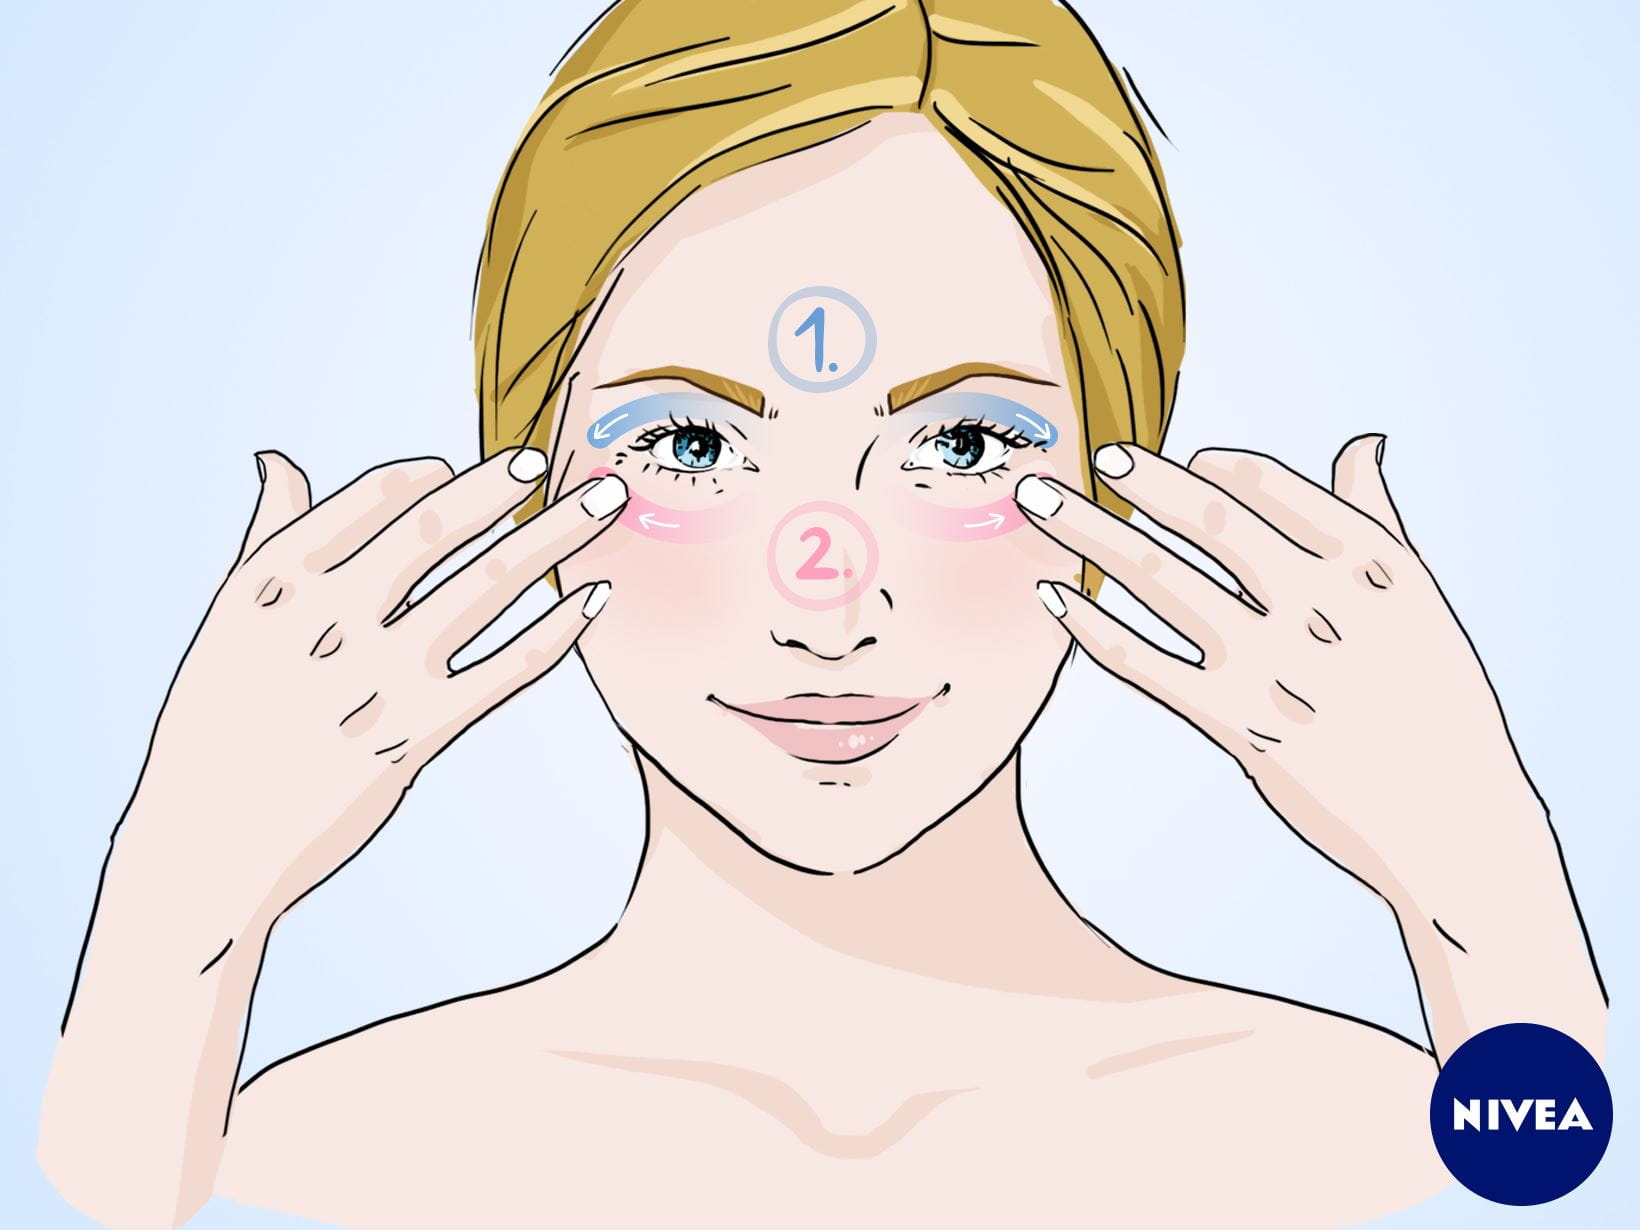 NIVEA Gesichtsmassage-Anleitung: Massagegriff für einen wachen Blick